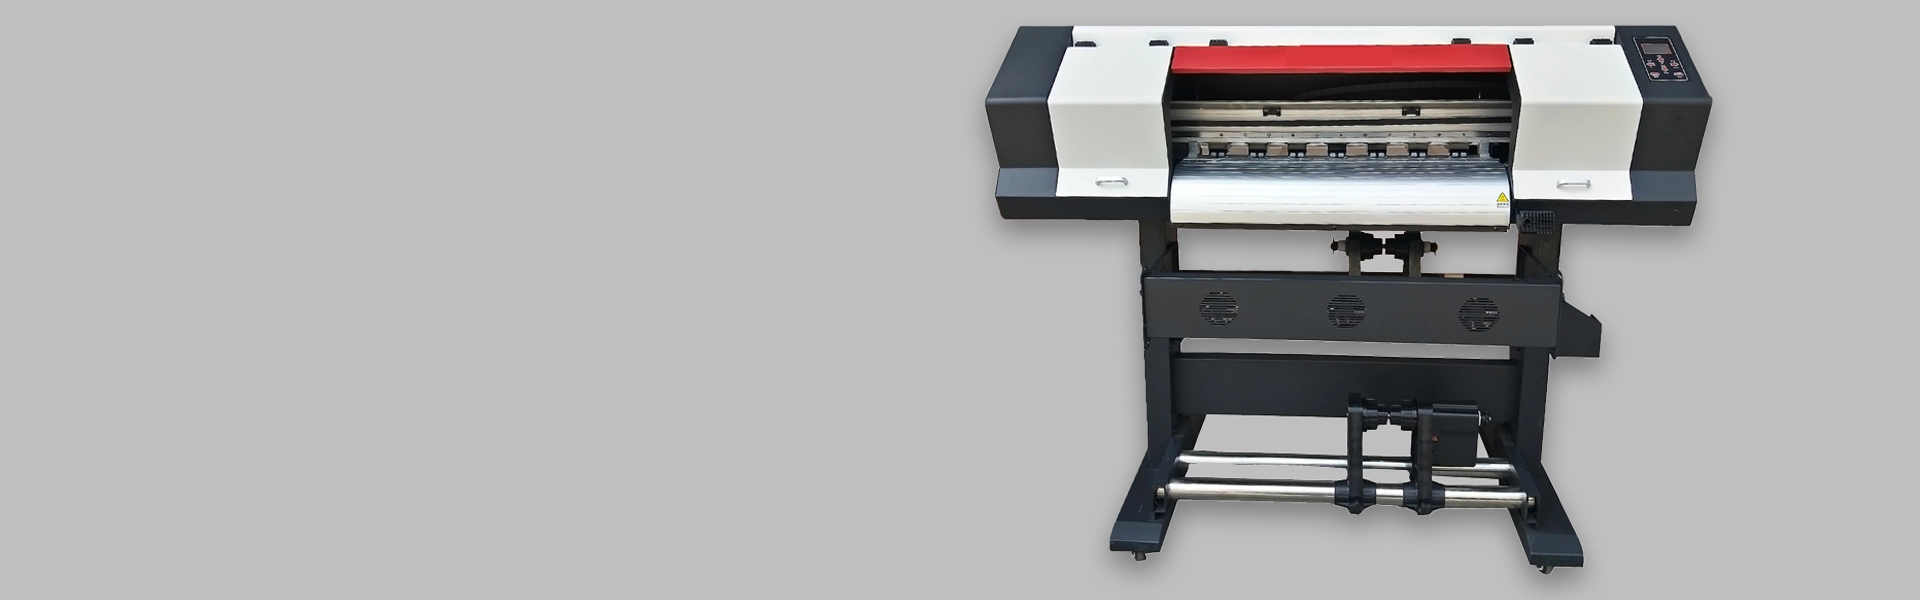 Impresora de sublimación de 70 cm